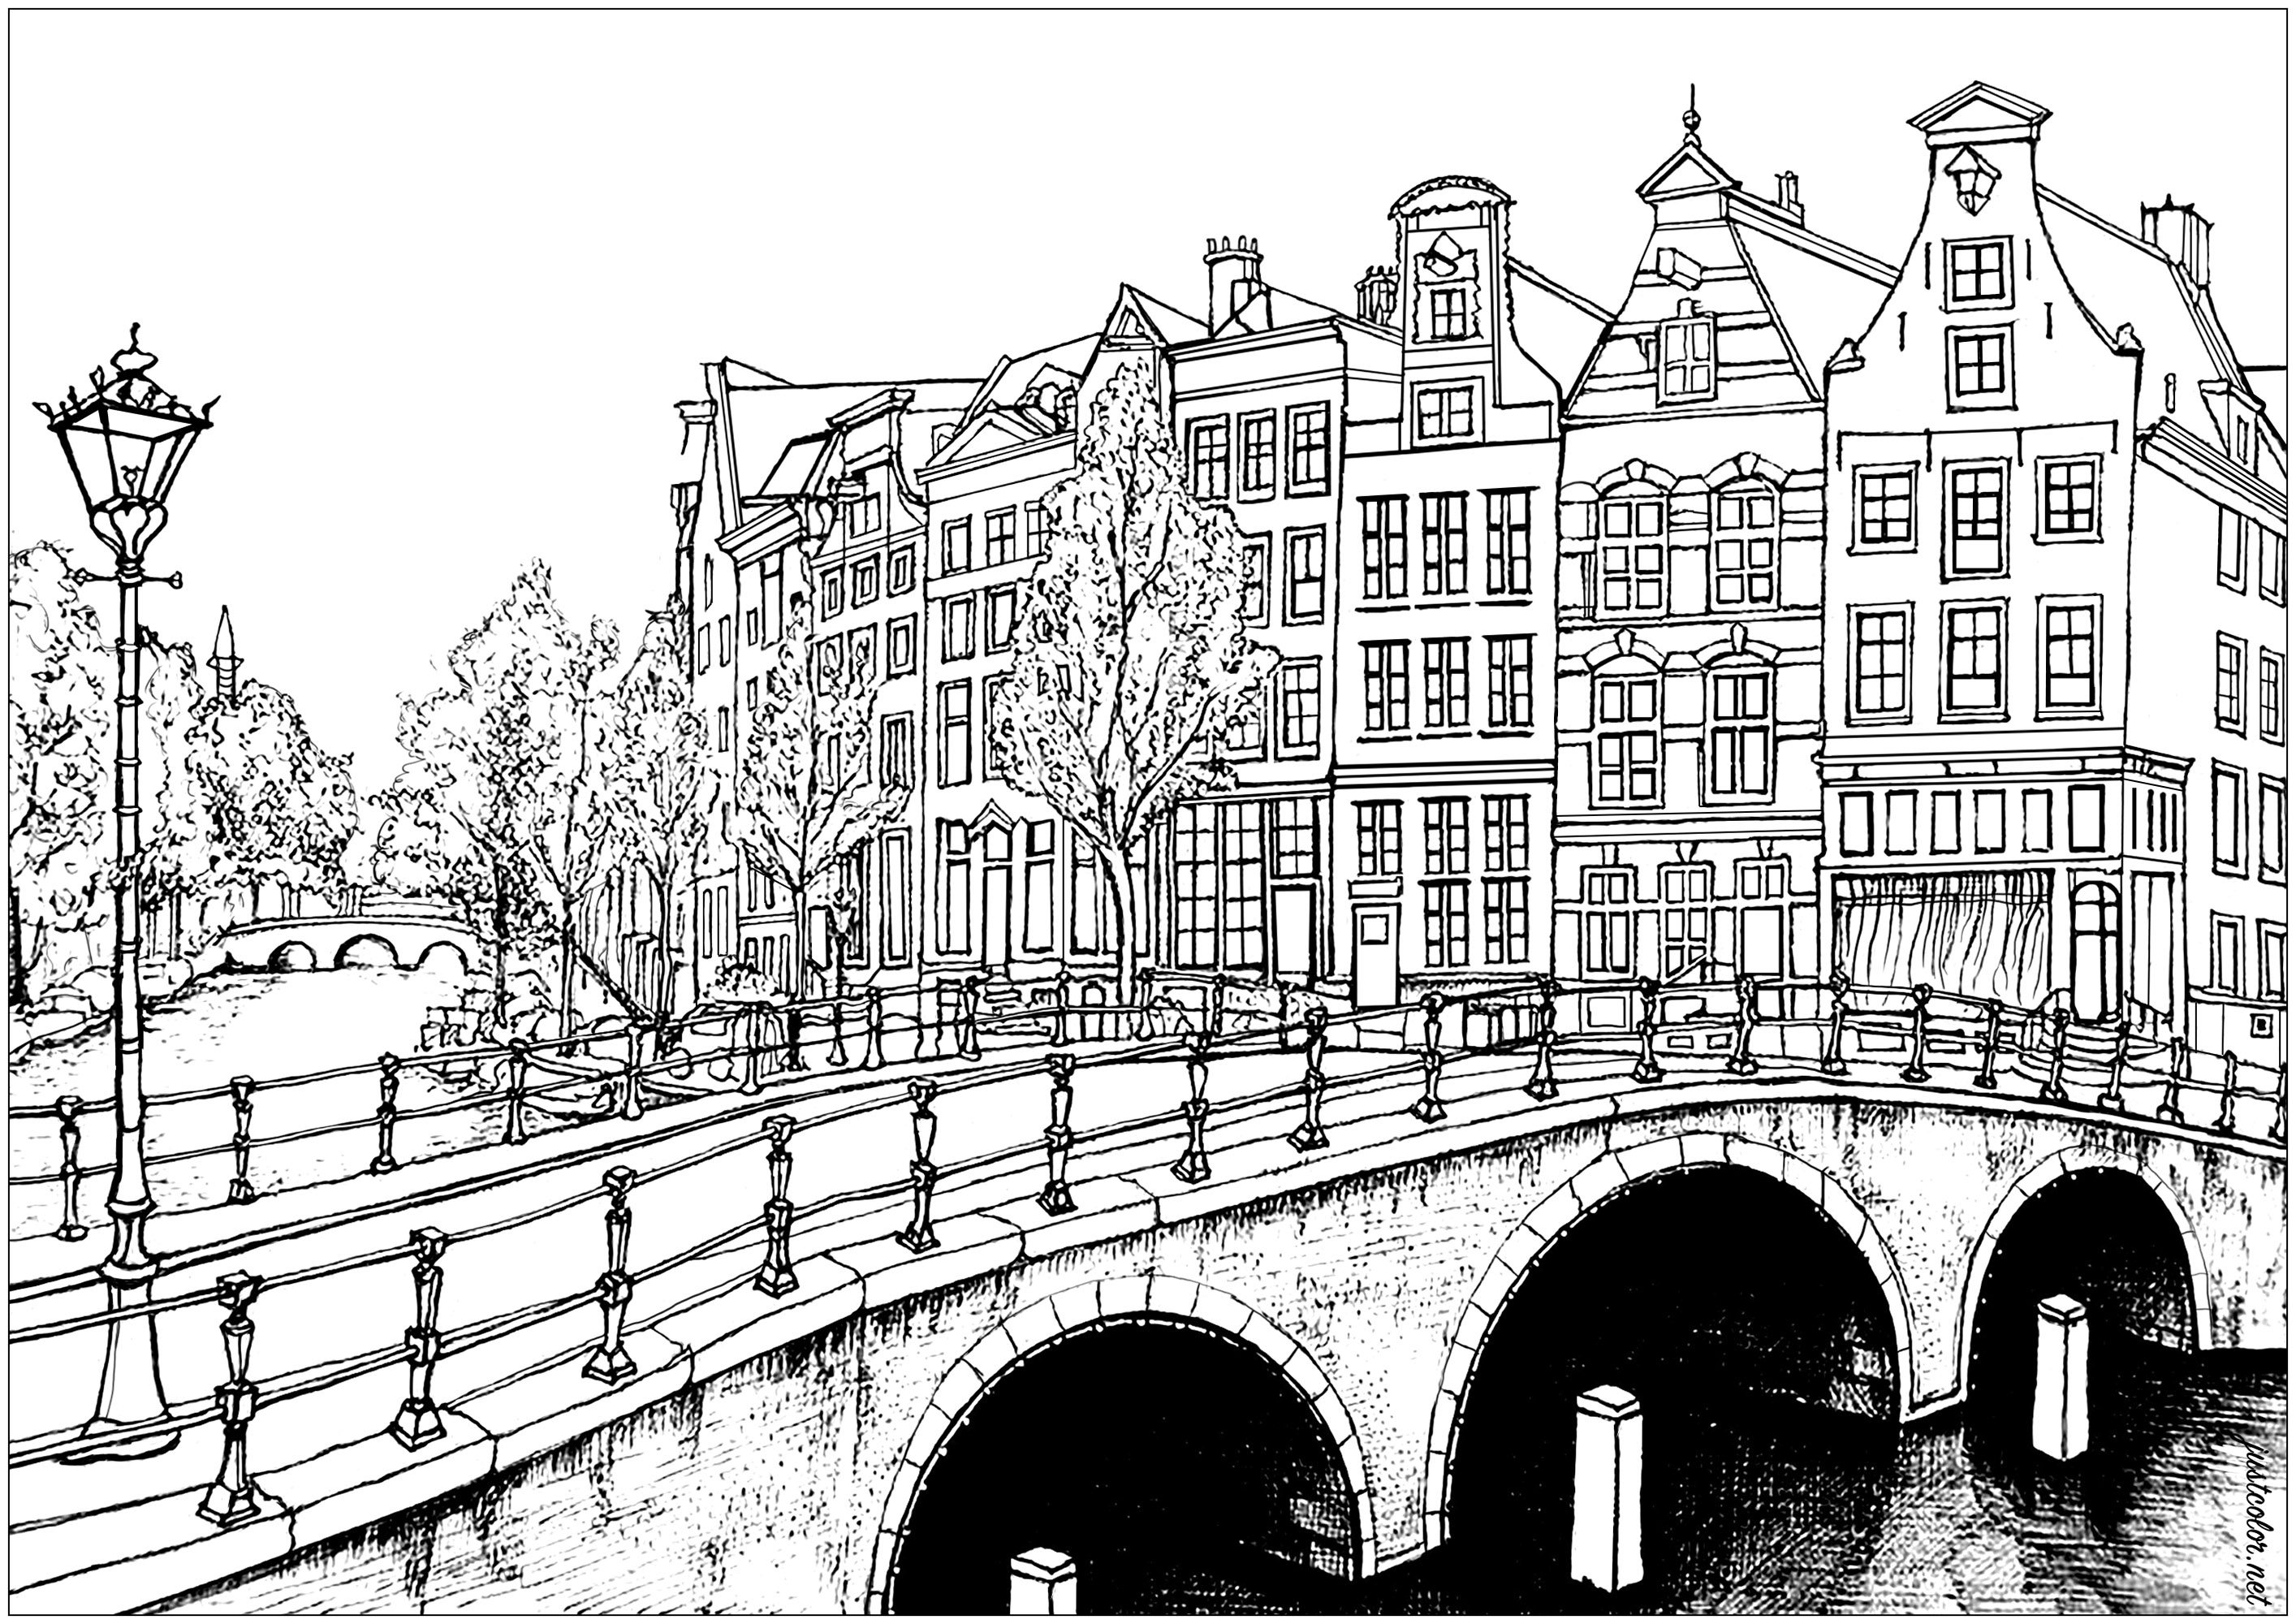 Casas e pontes de Amesterdão. Com mais de 165 canais, é possível percorrer 100 quilómetros sobre a água em Amesterdão! Ainda mais impressionante, existem 1.281 pontes na cidade.A capital holandesa também tem a maior concentração de museus por metro quadrado de qualquer cidade do mundo. Os museus Van Gogh, Rijksmuseum e Stedelijk estão entre os mais famosos que se pode visitar nesta incrível cidade, Artista : Olivier